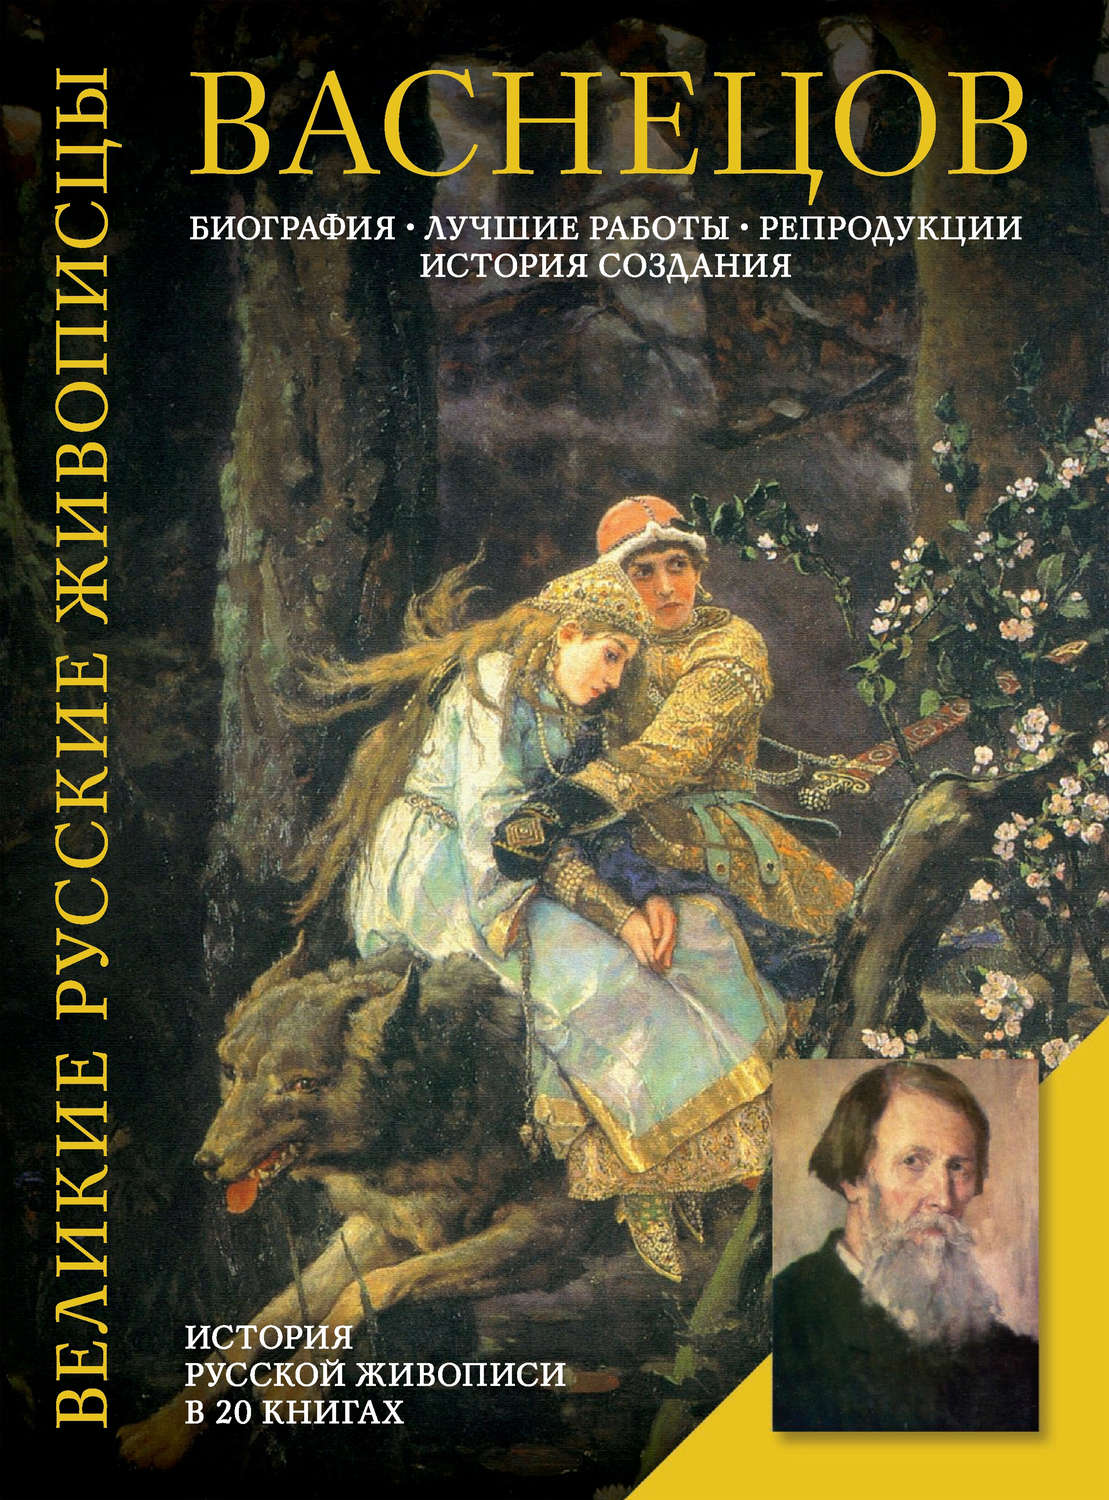 Книги о Васнецове Викторе Михайловиче